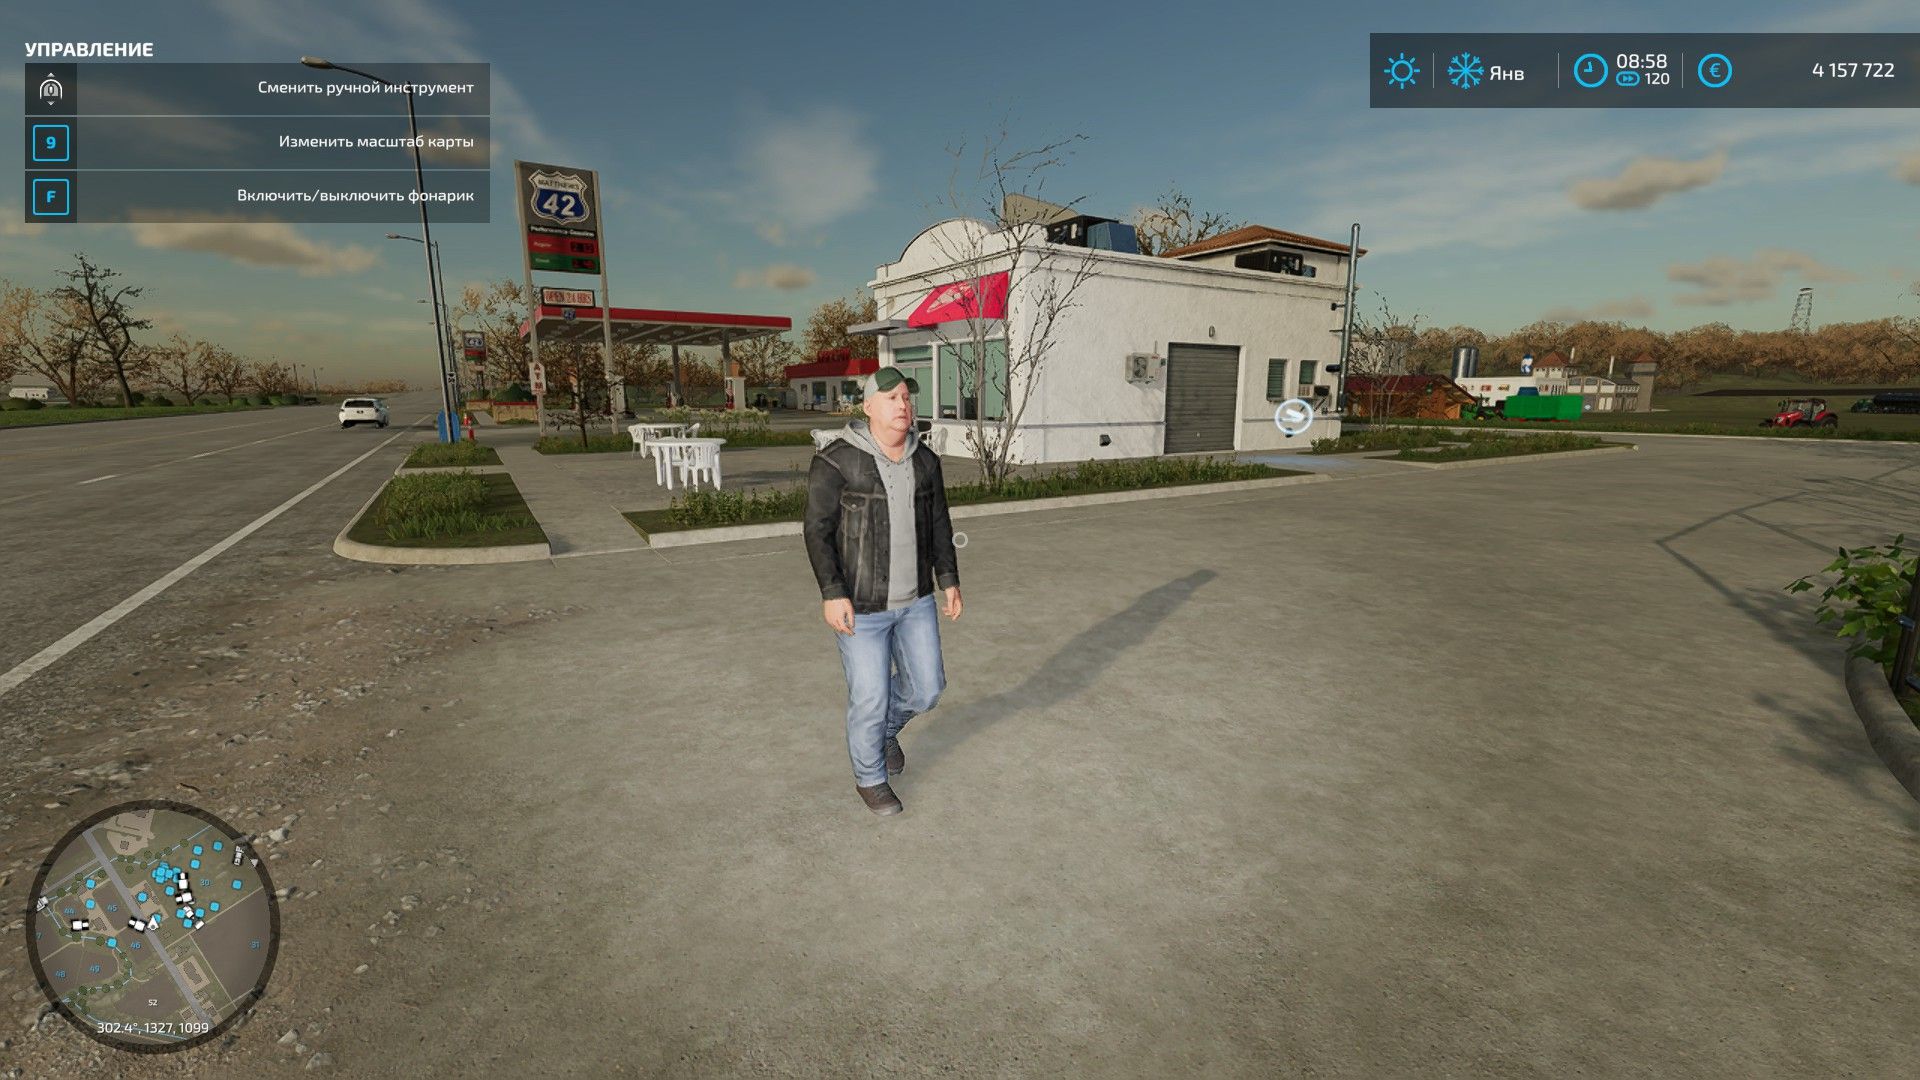 В Farming Simulator 22 также появились ходячие по улицам NPC. Жаль только, взаимодействовать с ними никак нельзя